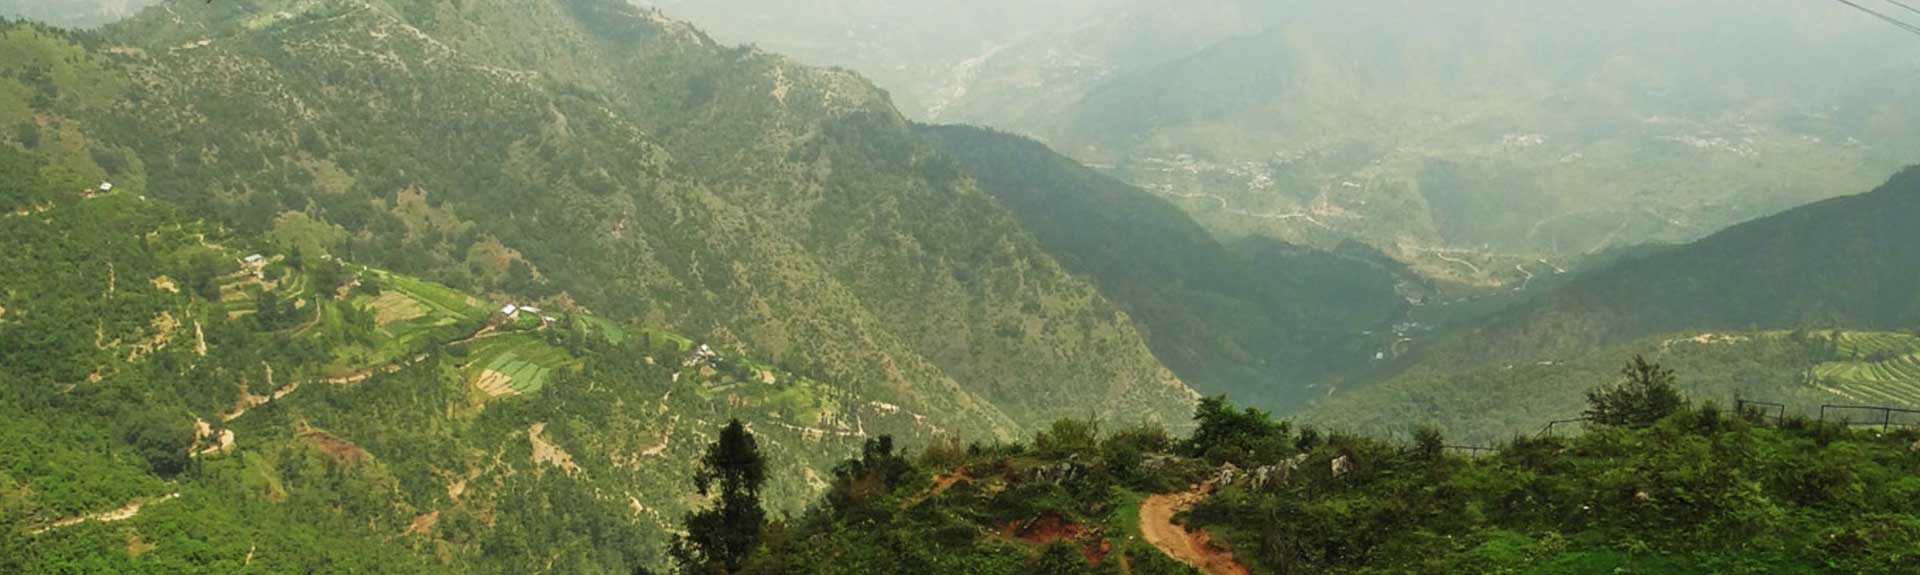 Uttarakhand as a tourist destination